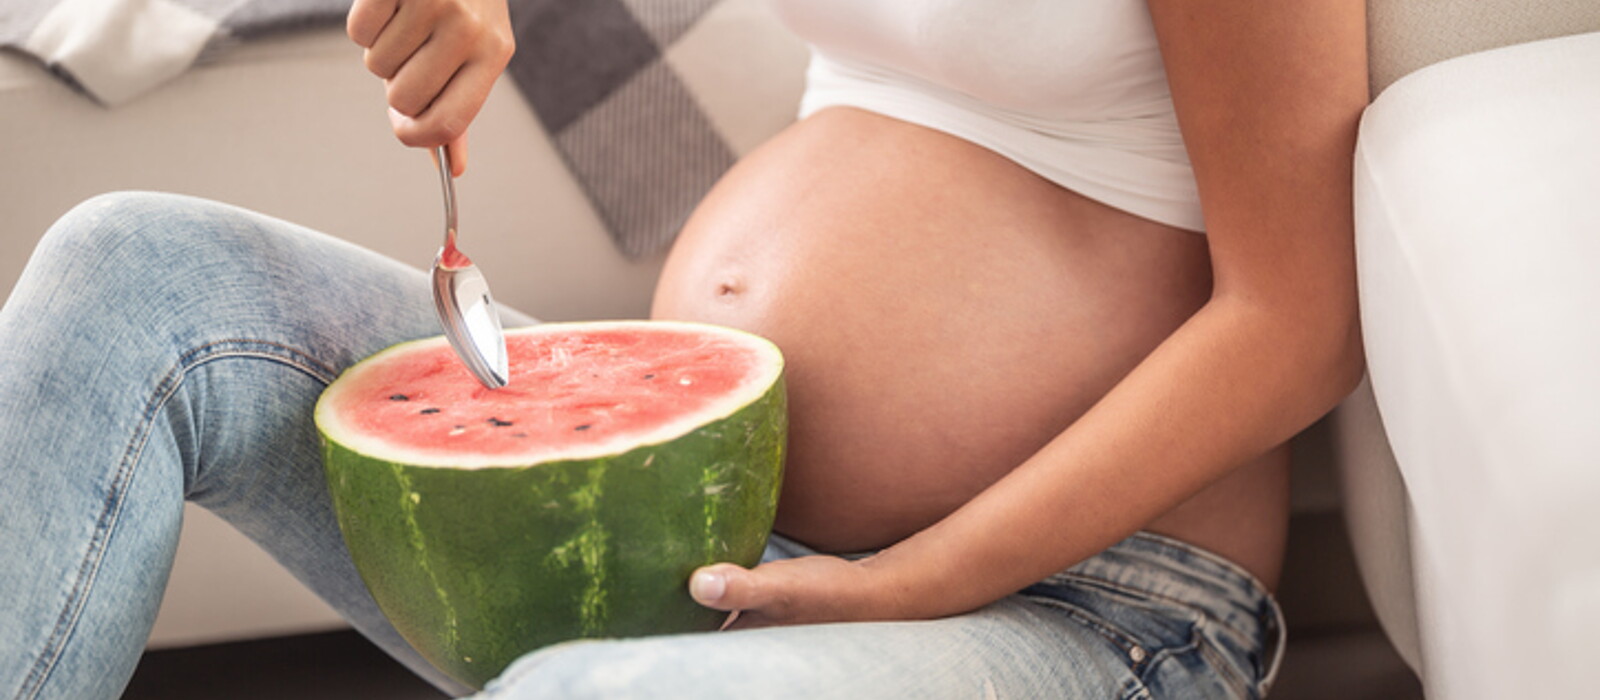 คนท้องกินแตงโมได้ไหม คุณแม่กินแตงโมอย่างไรให้ดีกับลูกในครรภ์